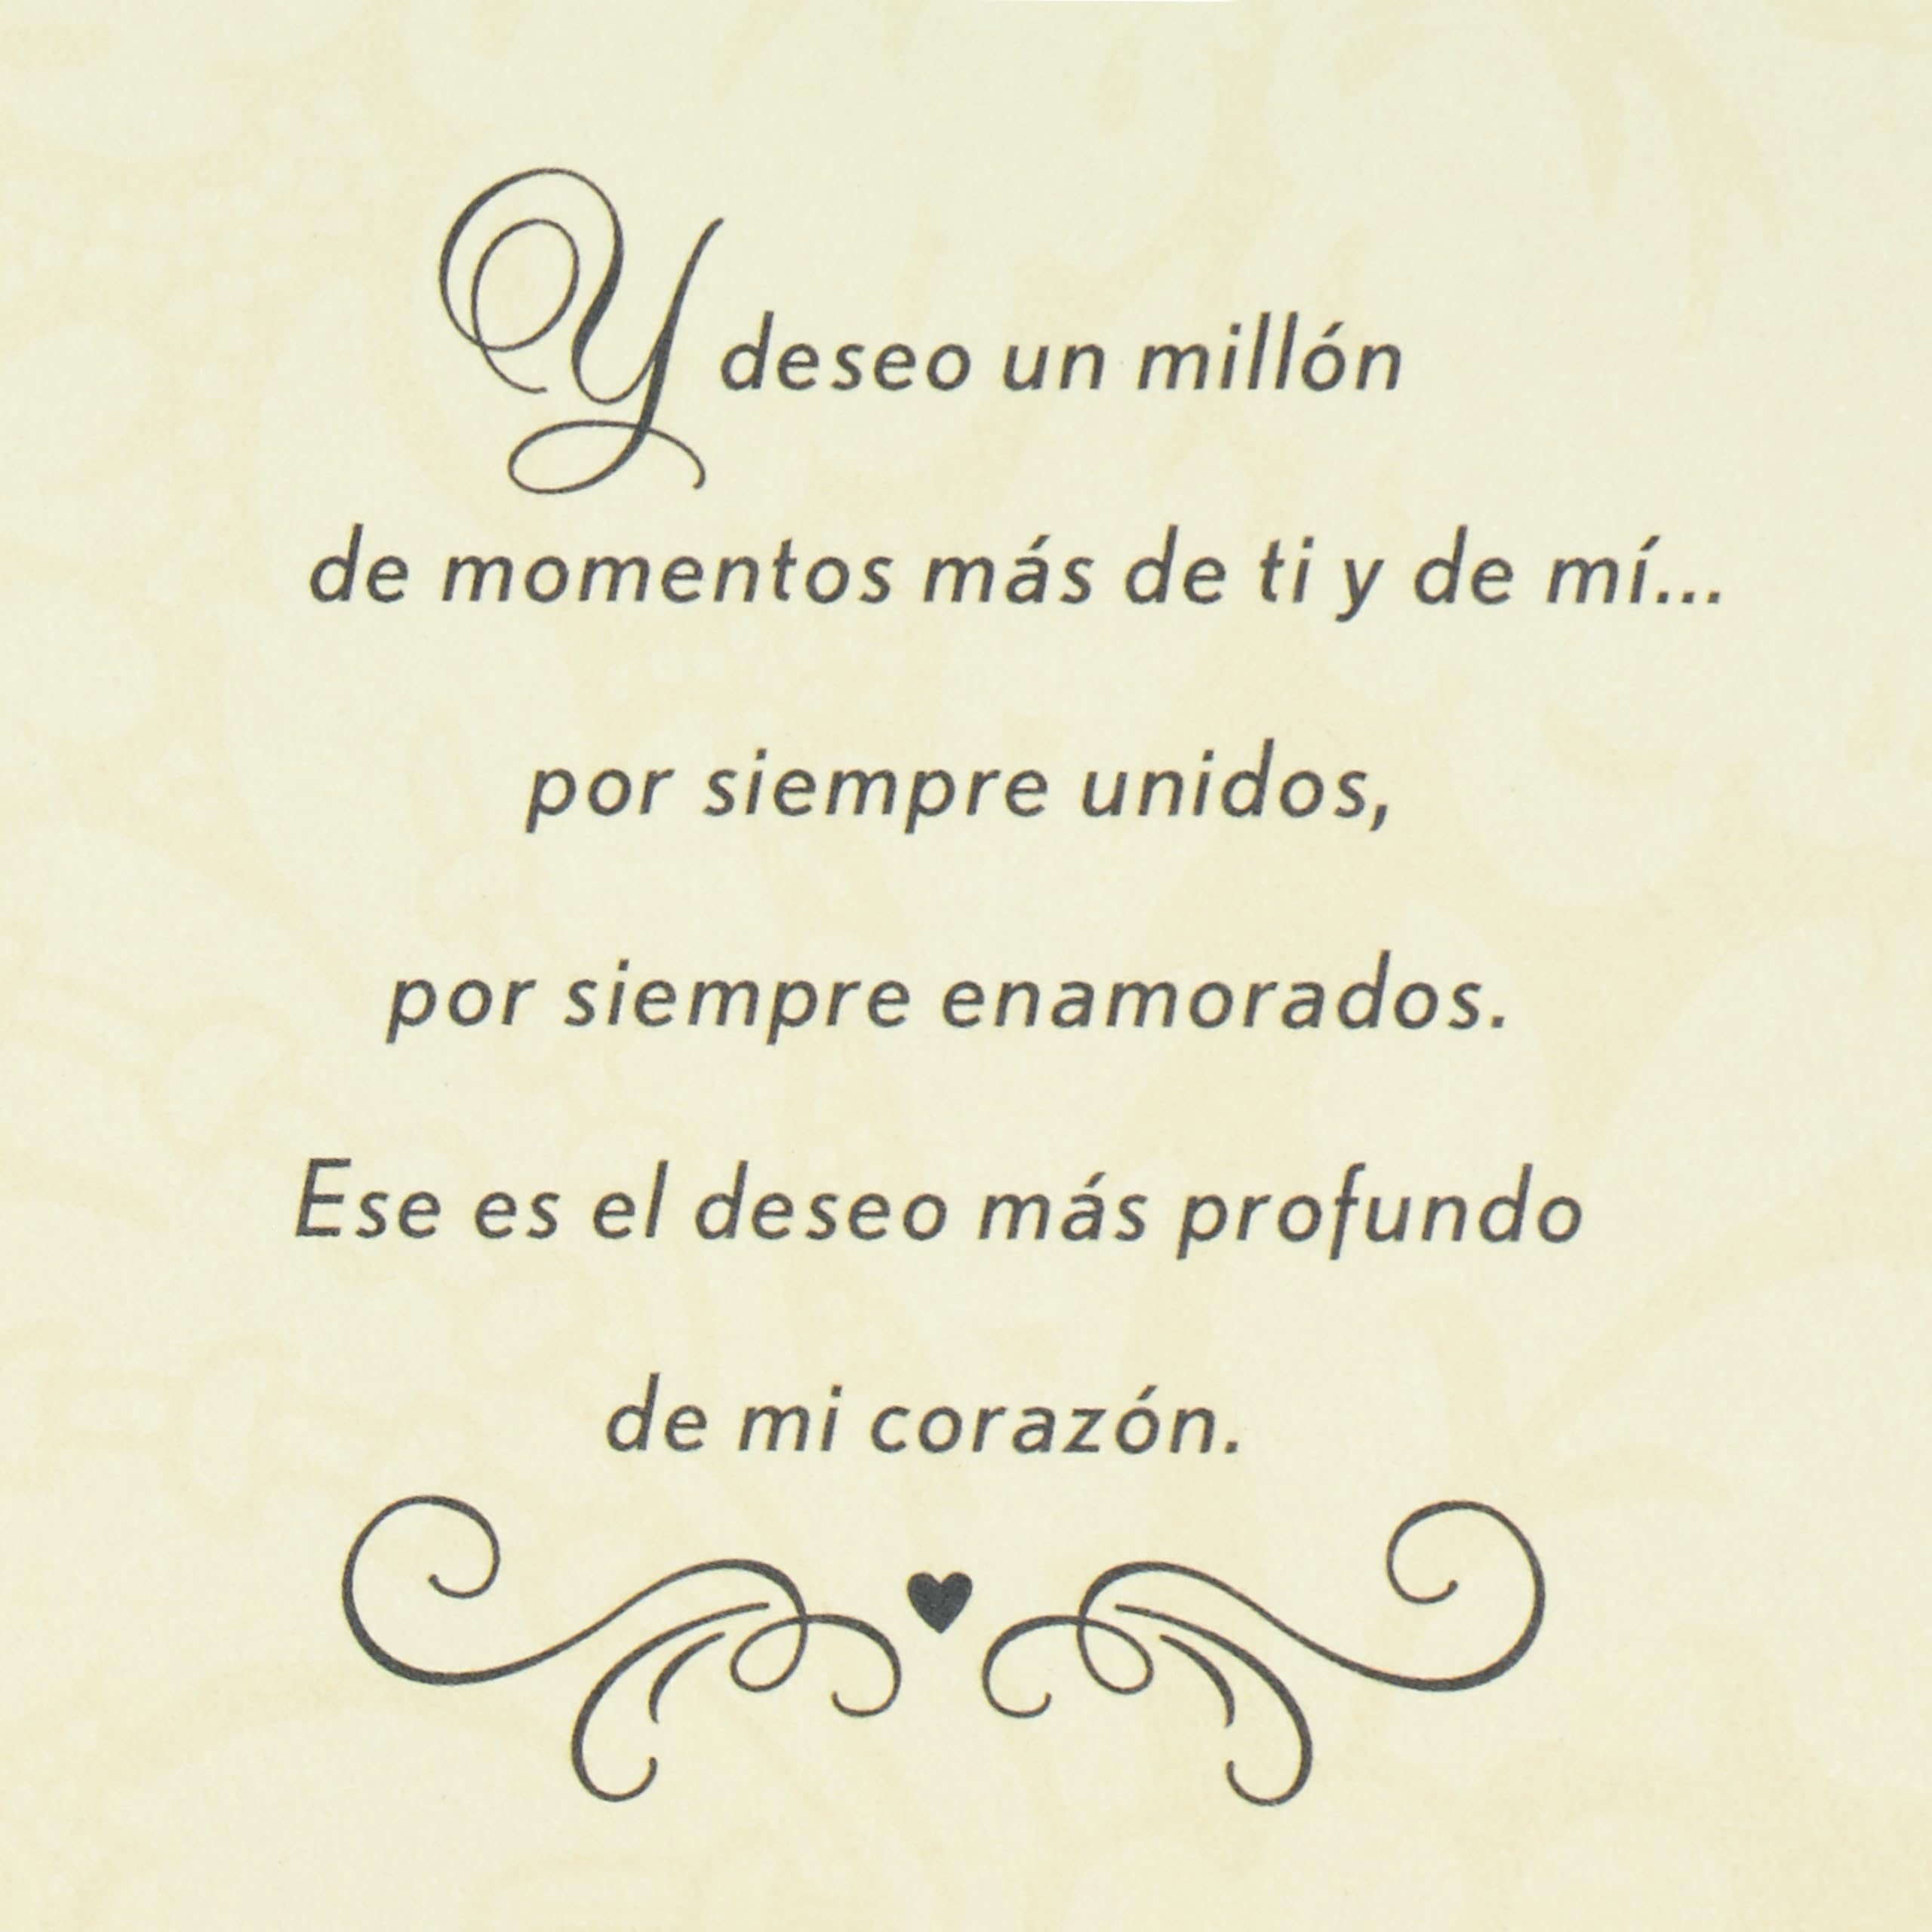 Hallmark Vida Spanish Anniversary Card (En Nuestro Aniversario) for Husband, Wife, Esposo, Esposa